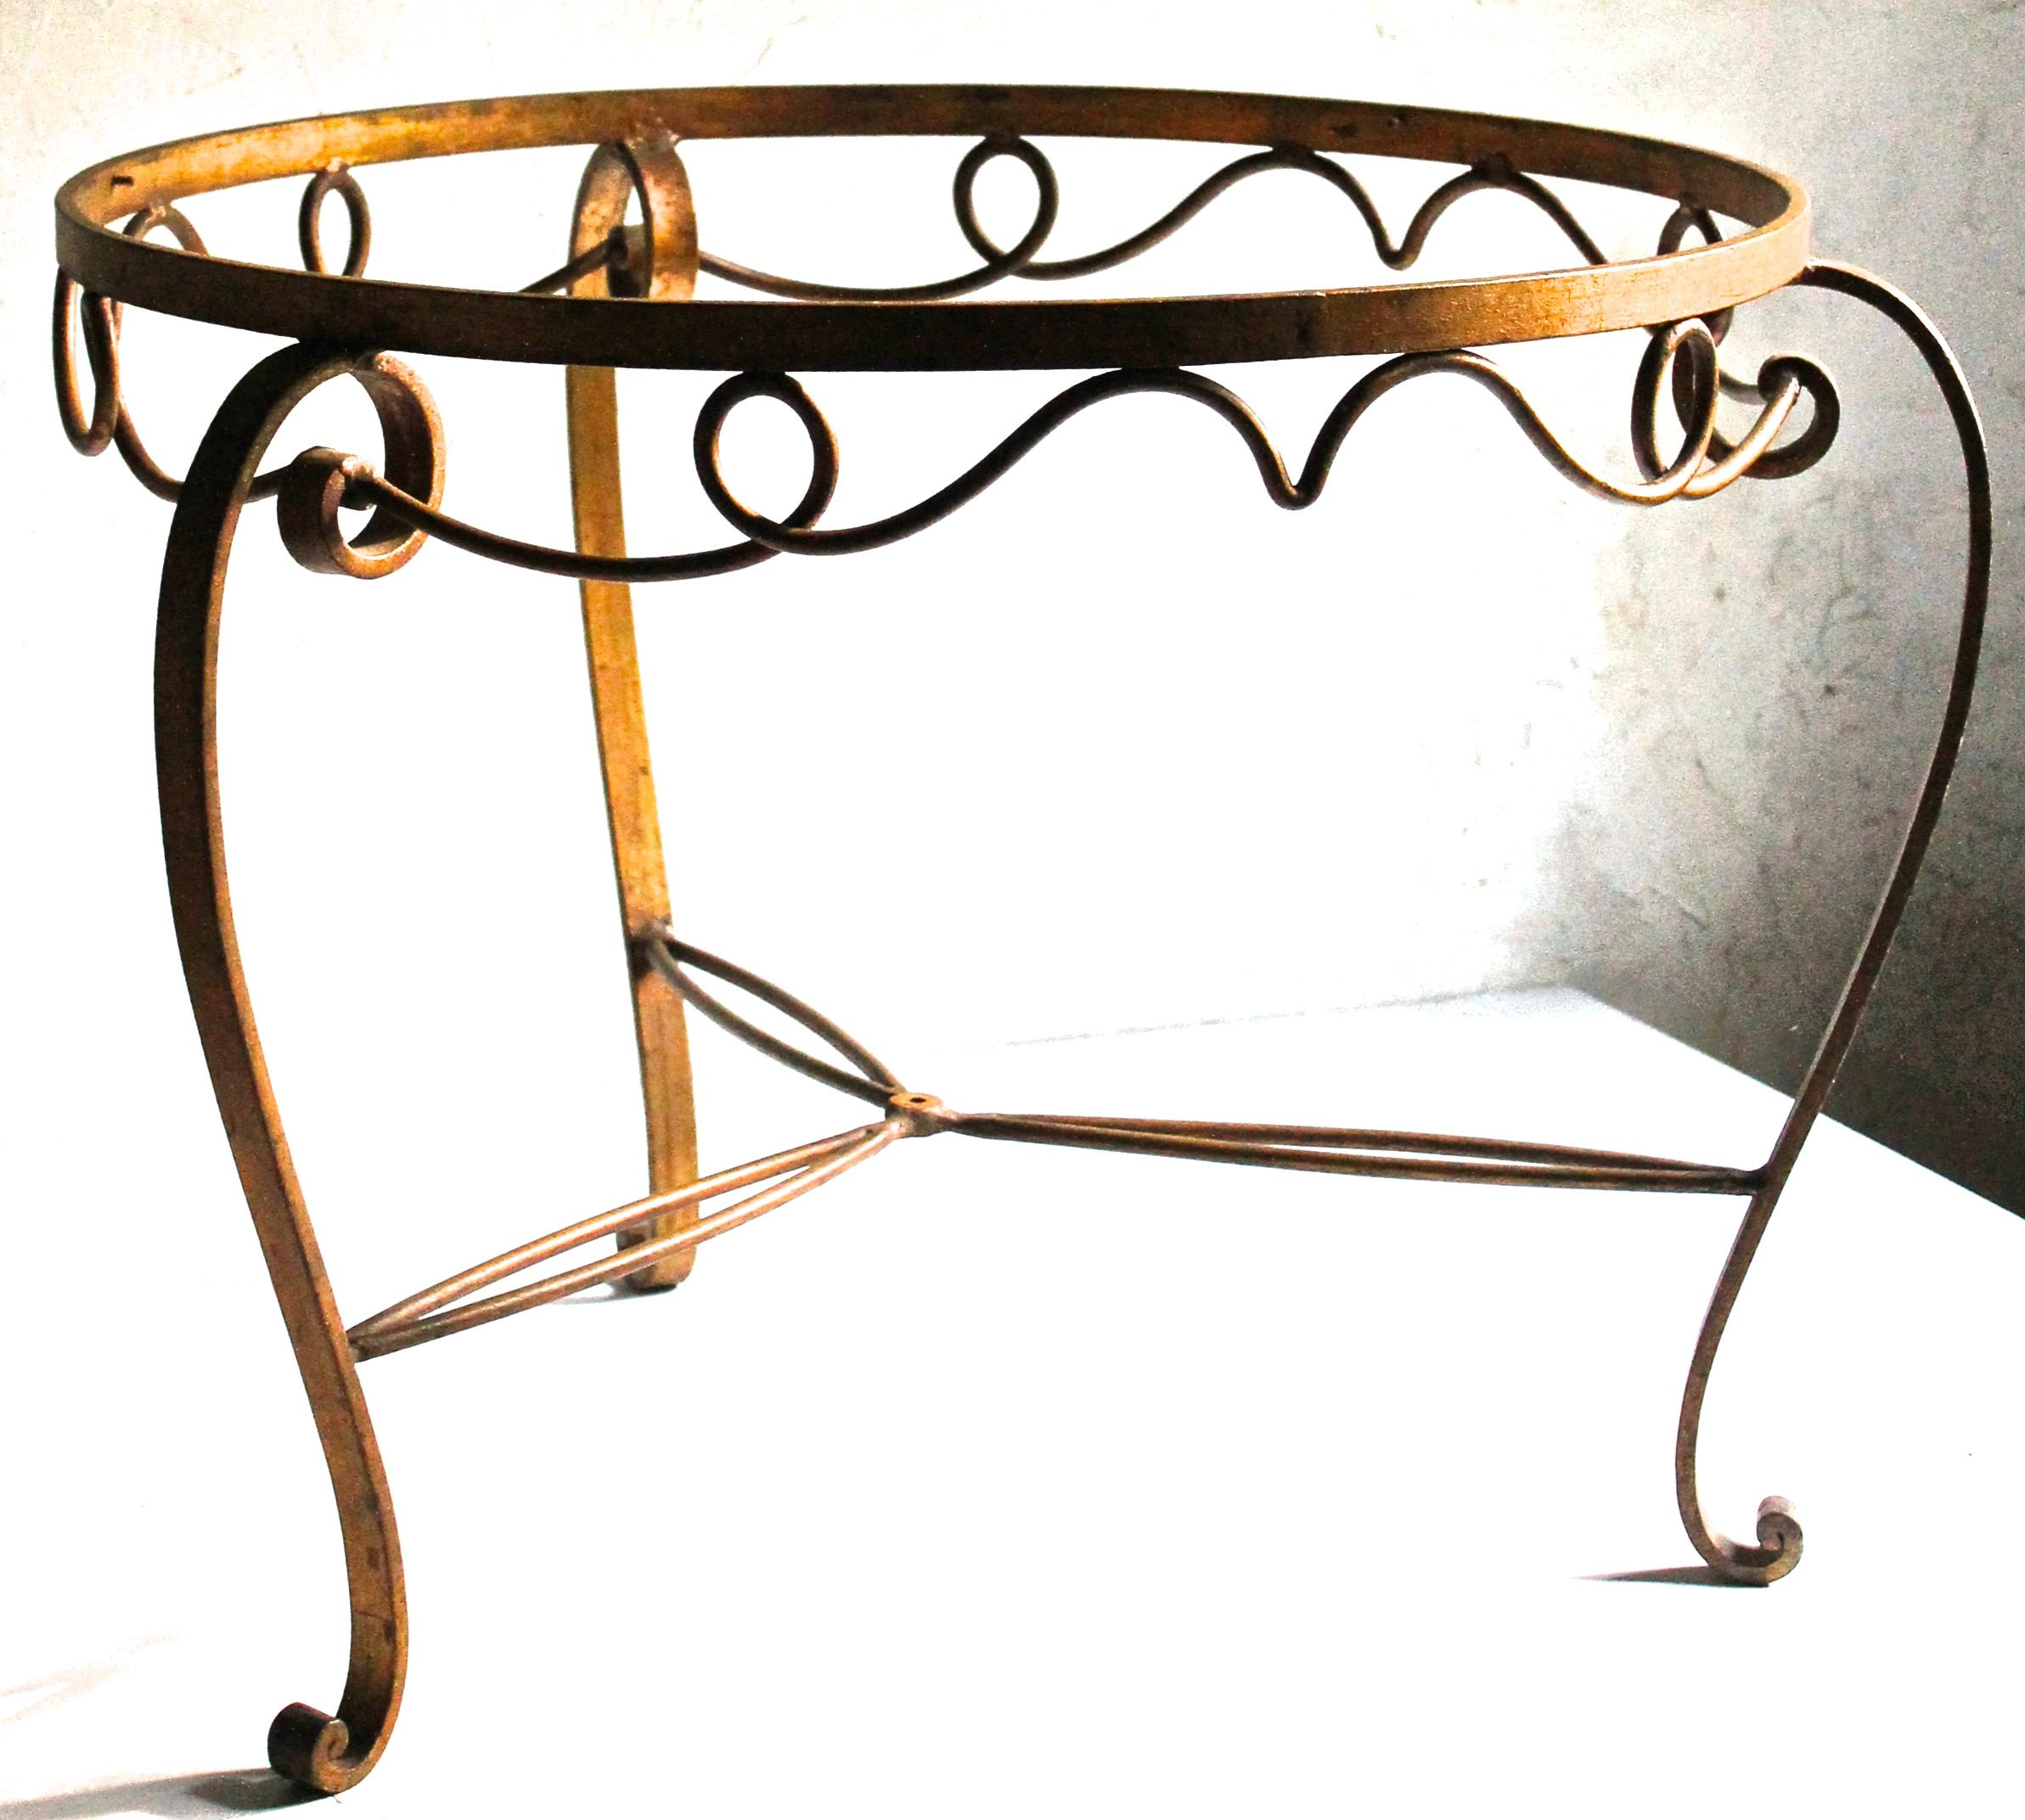 Ein schöner und anmutig geformter niedriger Tisch im französischen Stil der 1940er Jahre von Rene Drouet und Rene Prou.